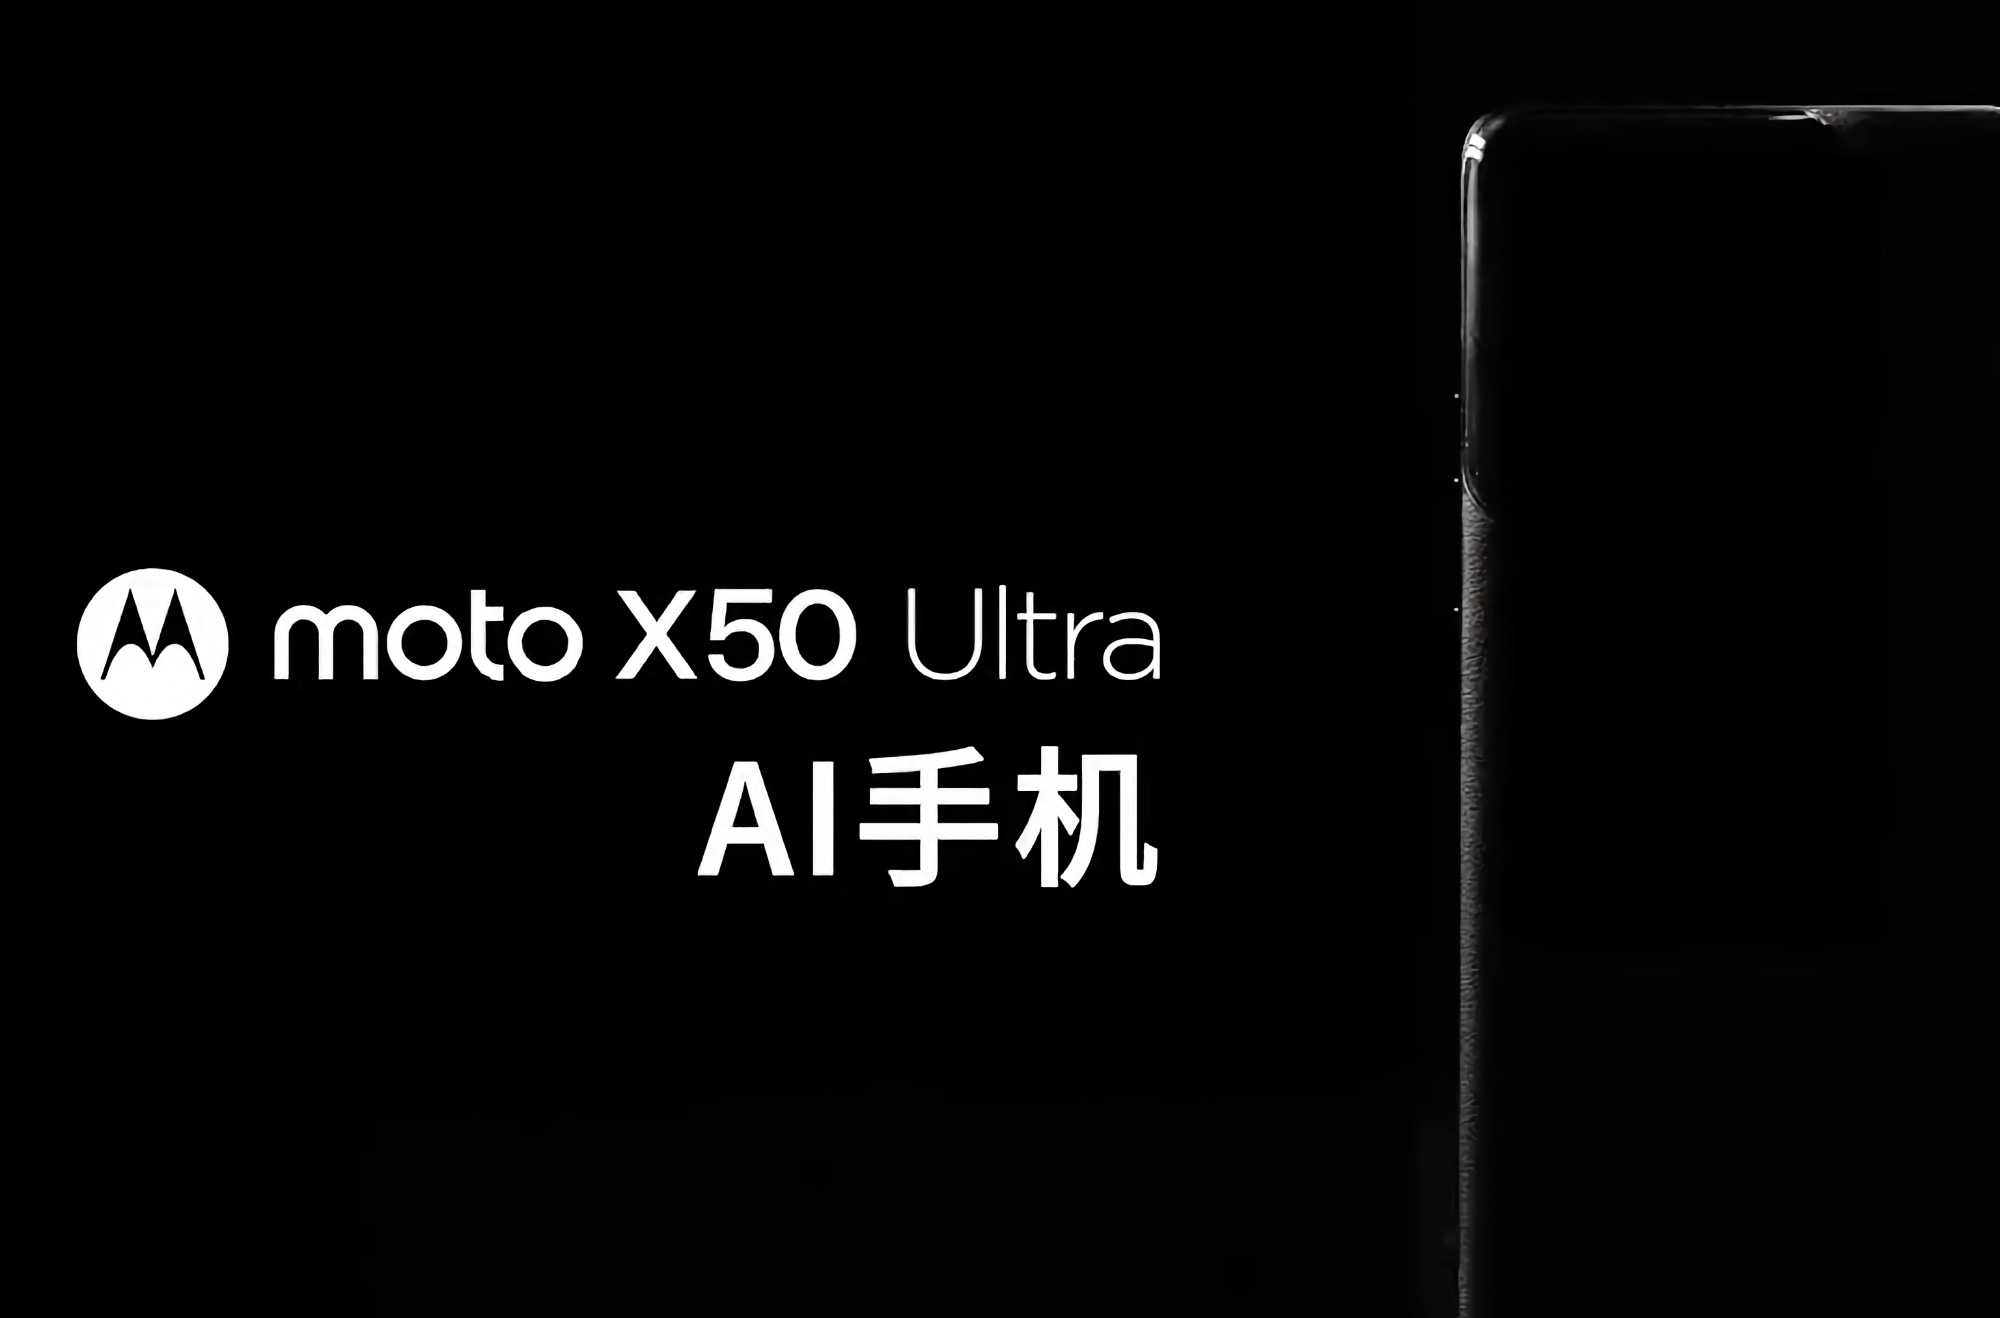 Nu er det officielt: Motorola forbereder sig på at lancere flagskibssmartphonen Moto X50 Ultra med AI-funktioner